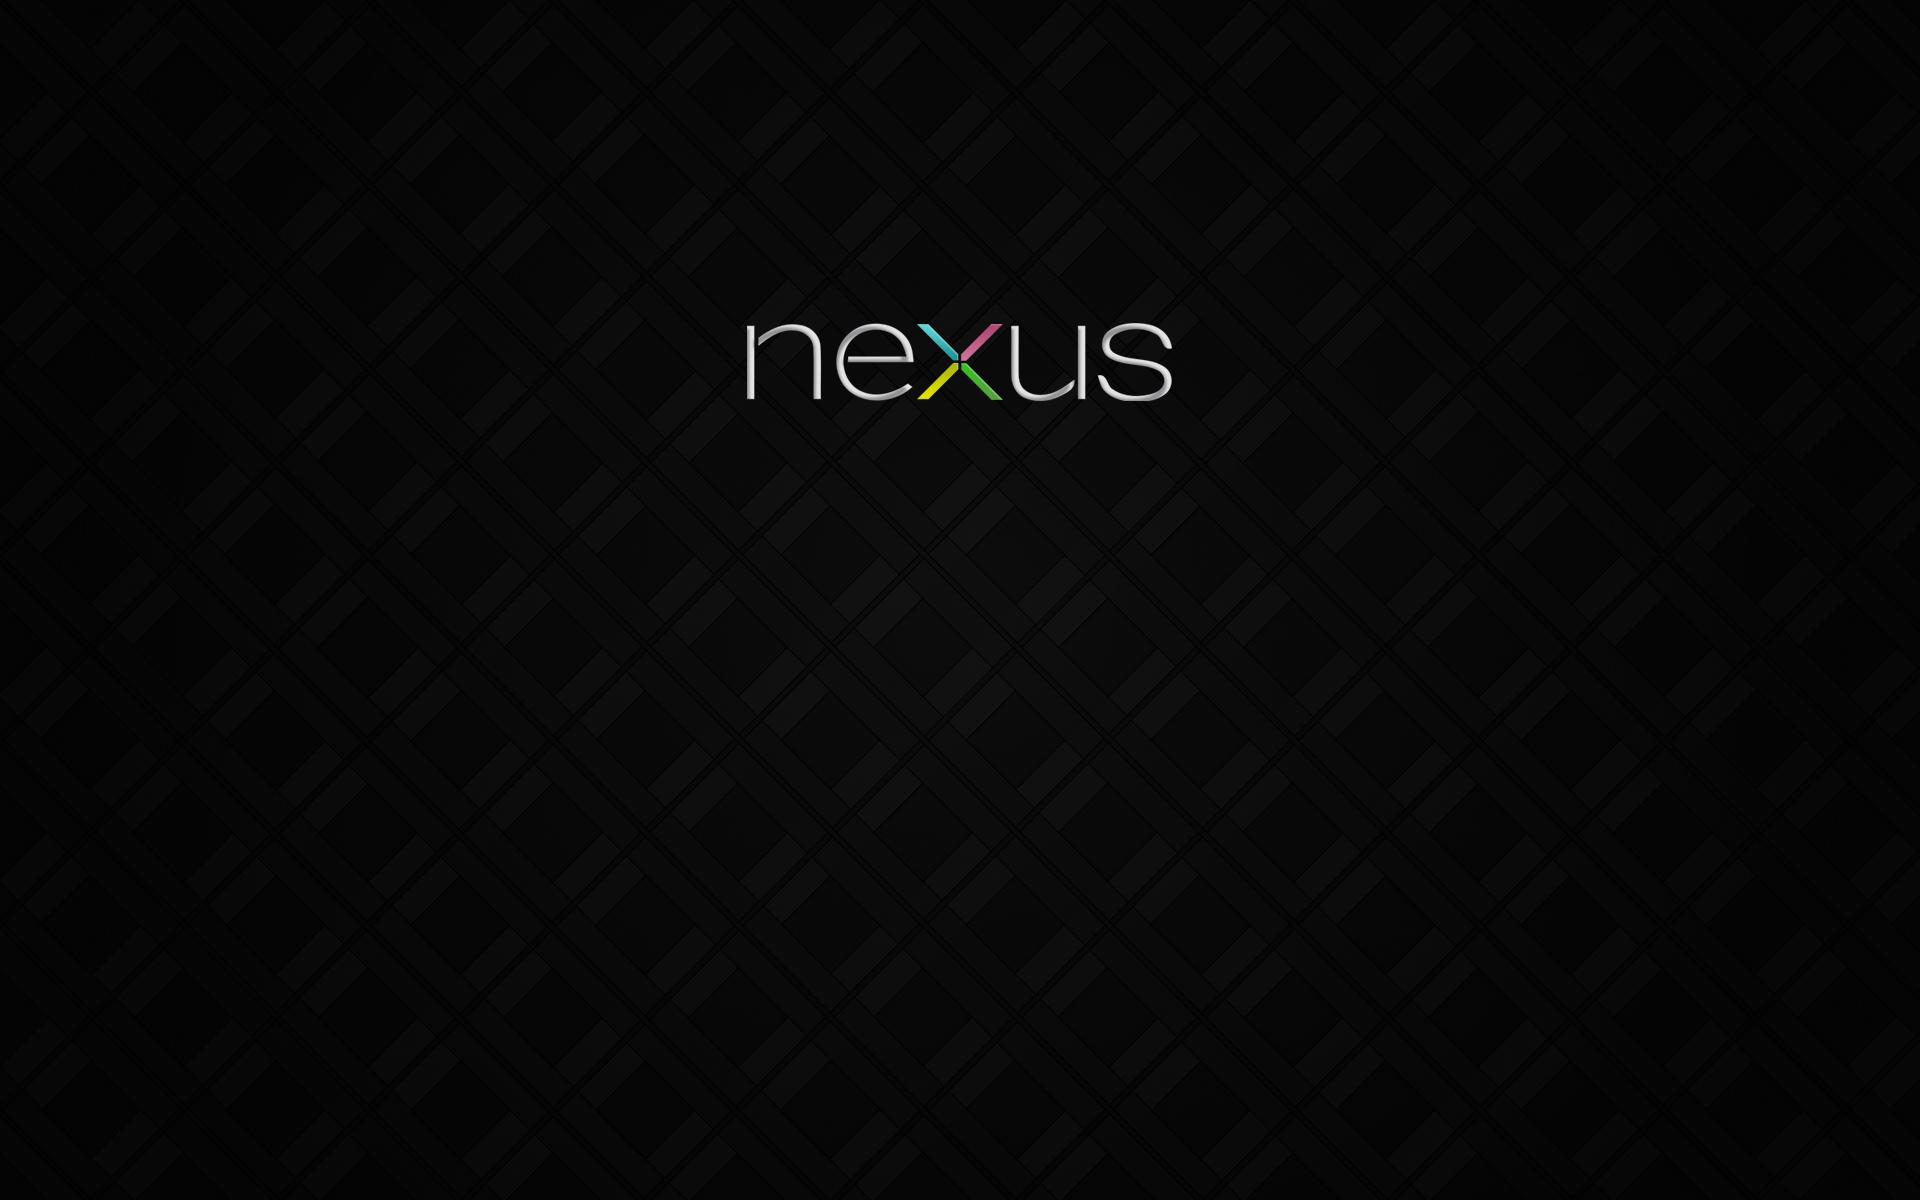 Nexus 7 Wallpapers 4k Hd Nexus 7 Backgrounds On Wallpaperbat